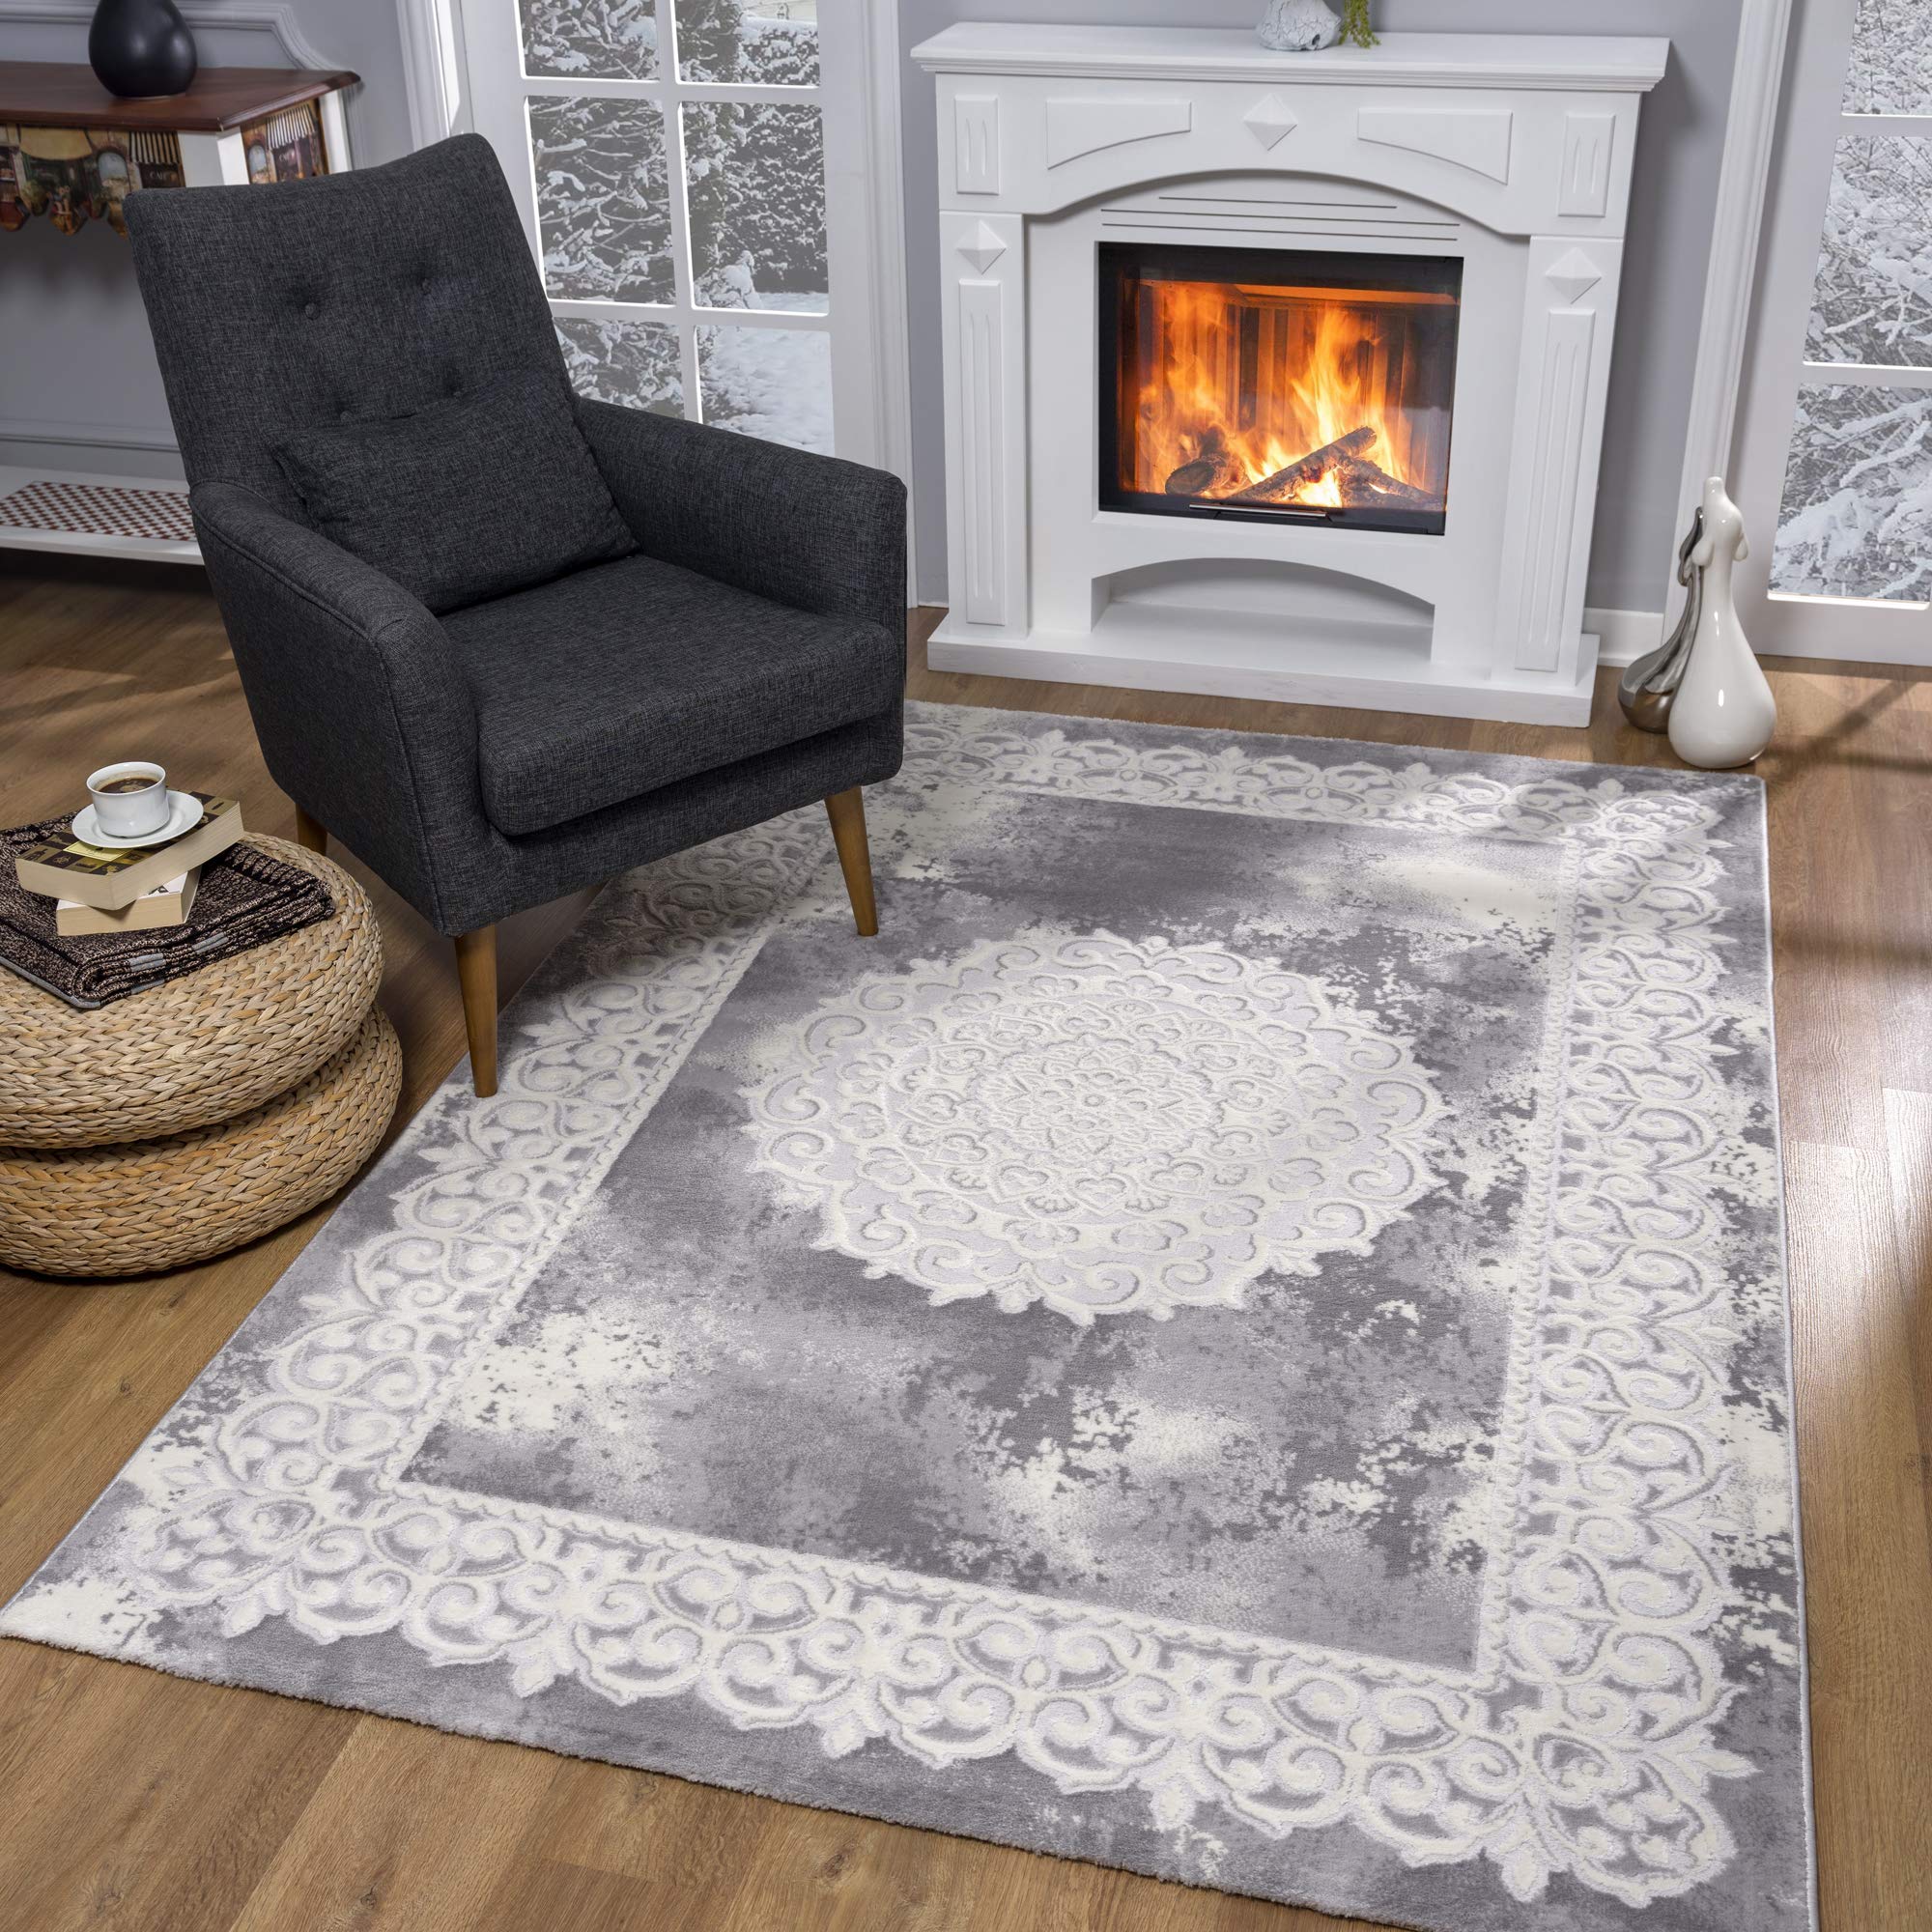 SANAT Teppiche für Wohnzimmer - Teppich Grau, Kurzflor Orientteppich, Öko-Tex 100 Zertifiziert, Größe: 200x280 cm